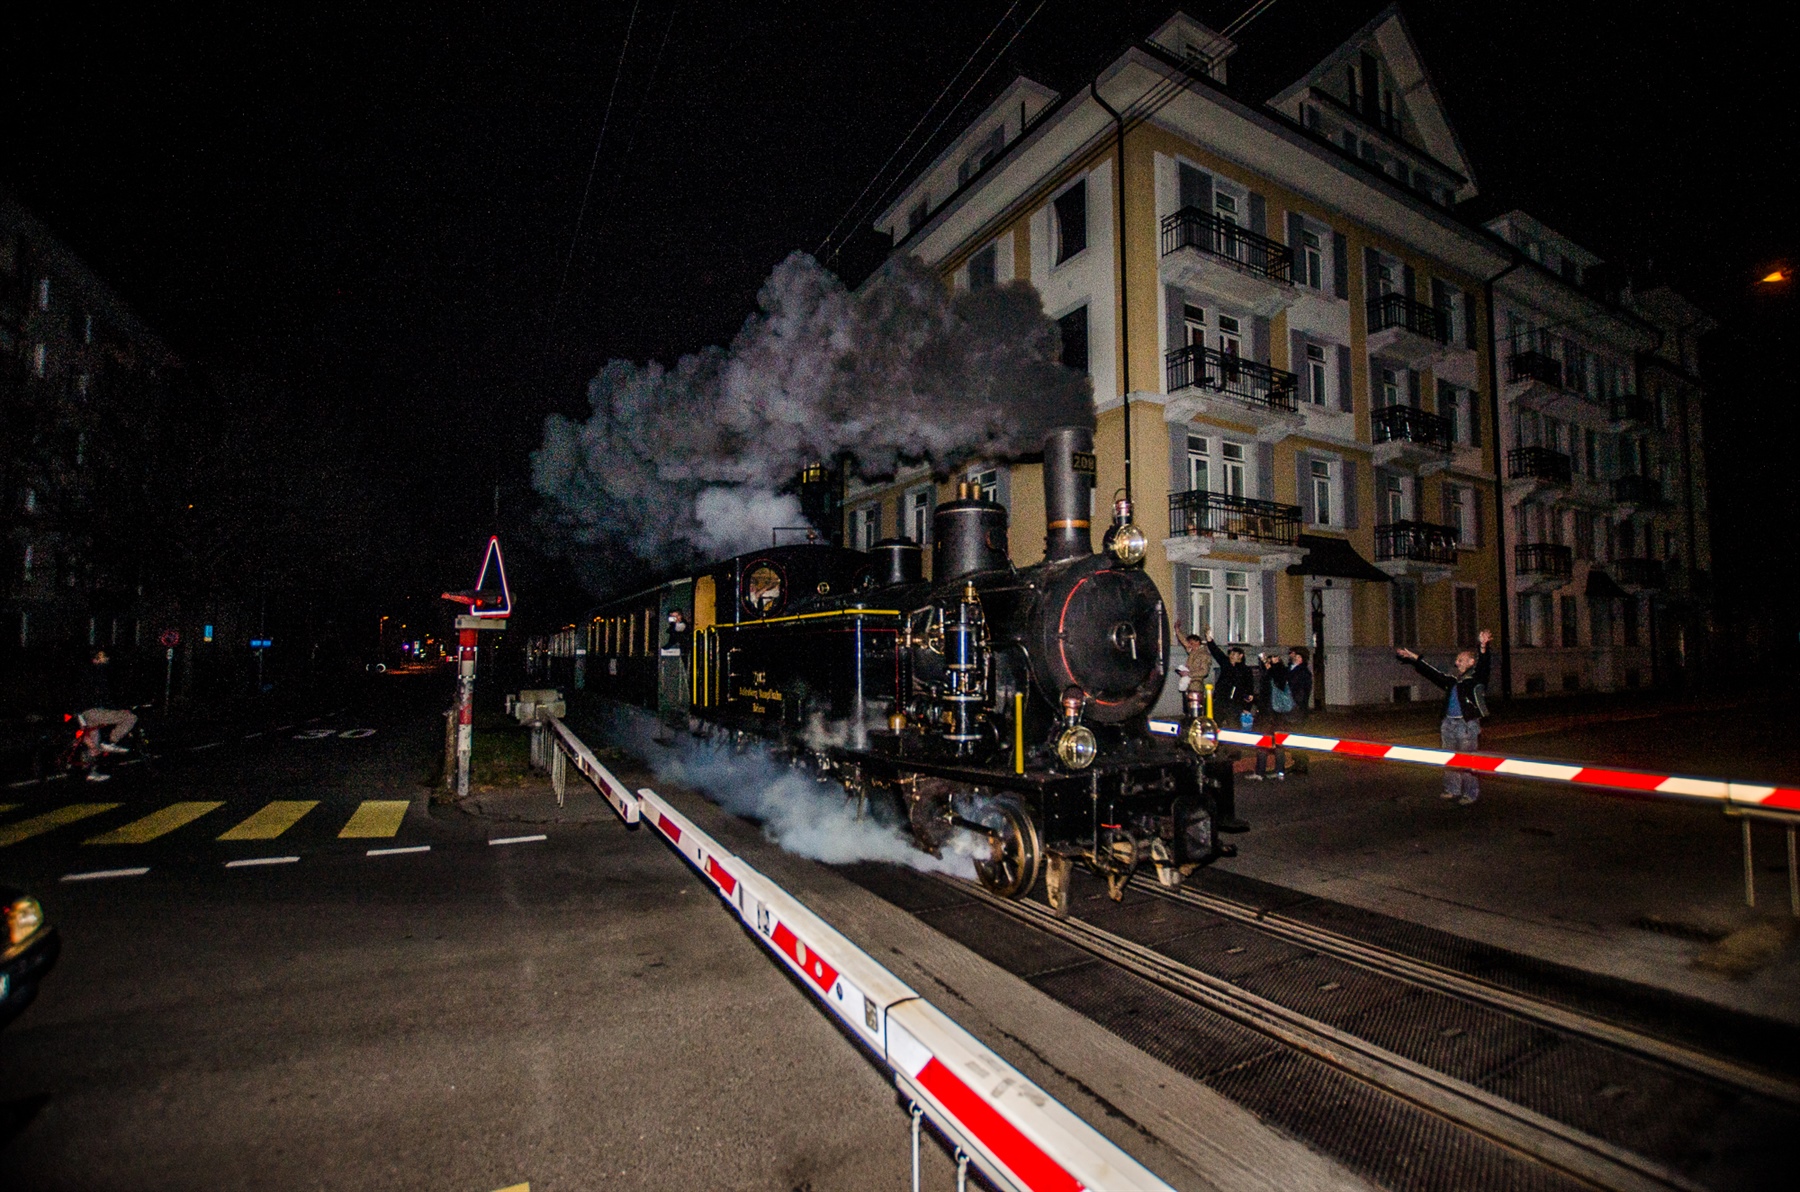 Letzte Bahn-Fahrt durchs Moosmattquartier in Luzern